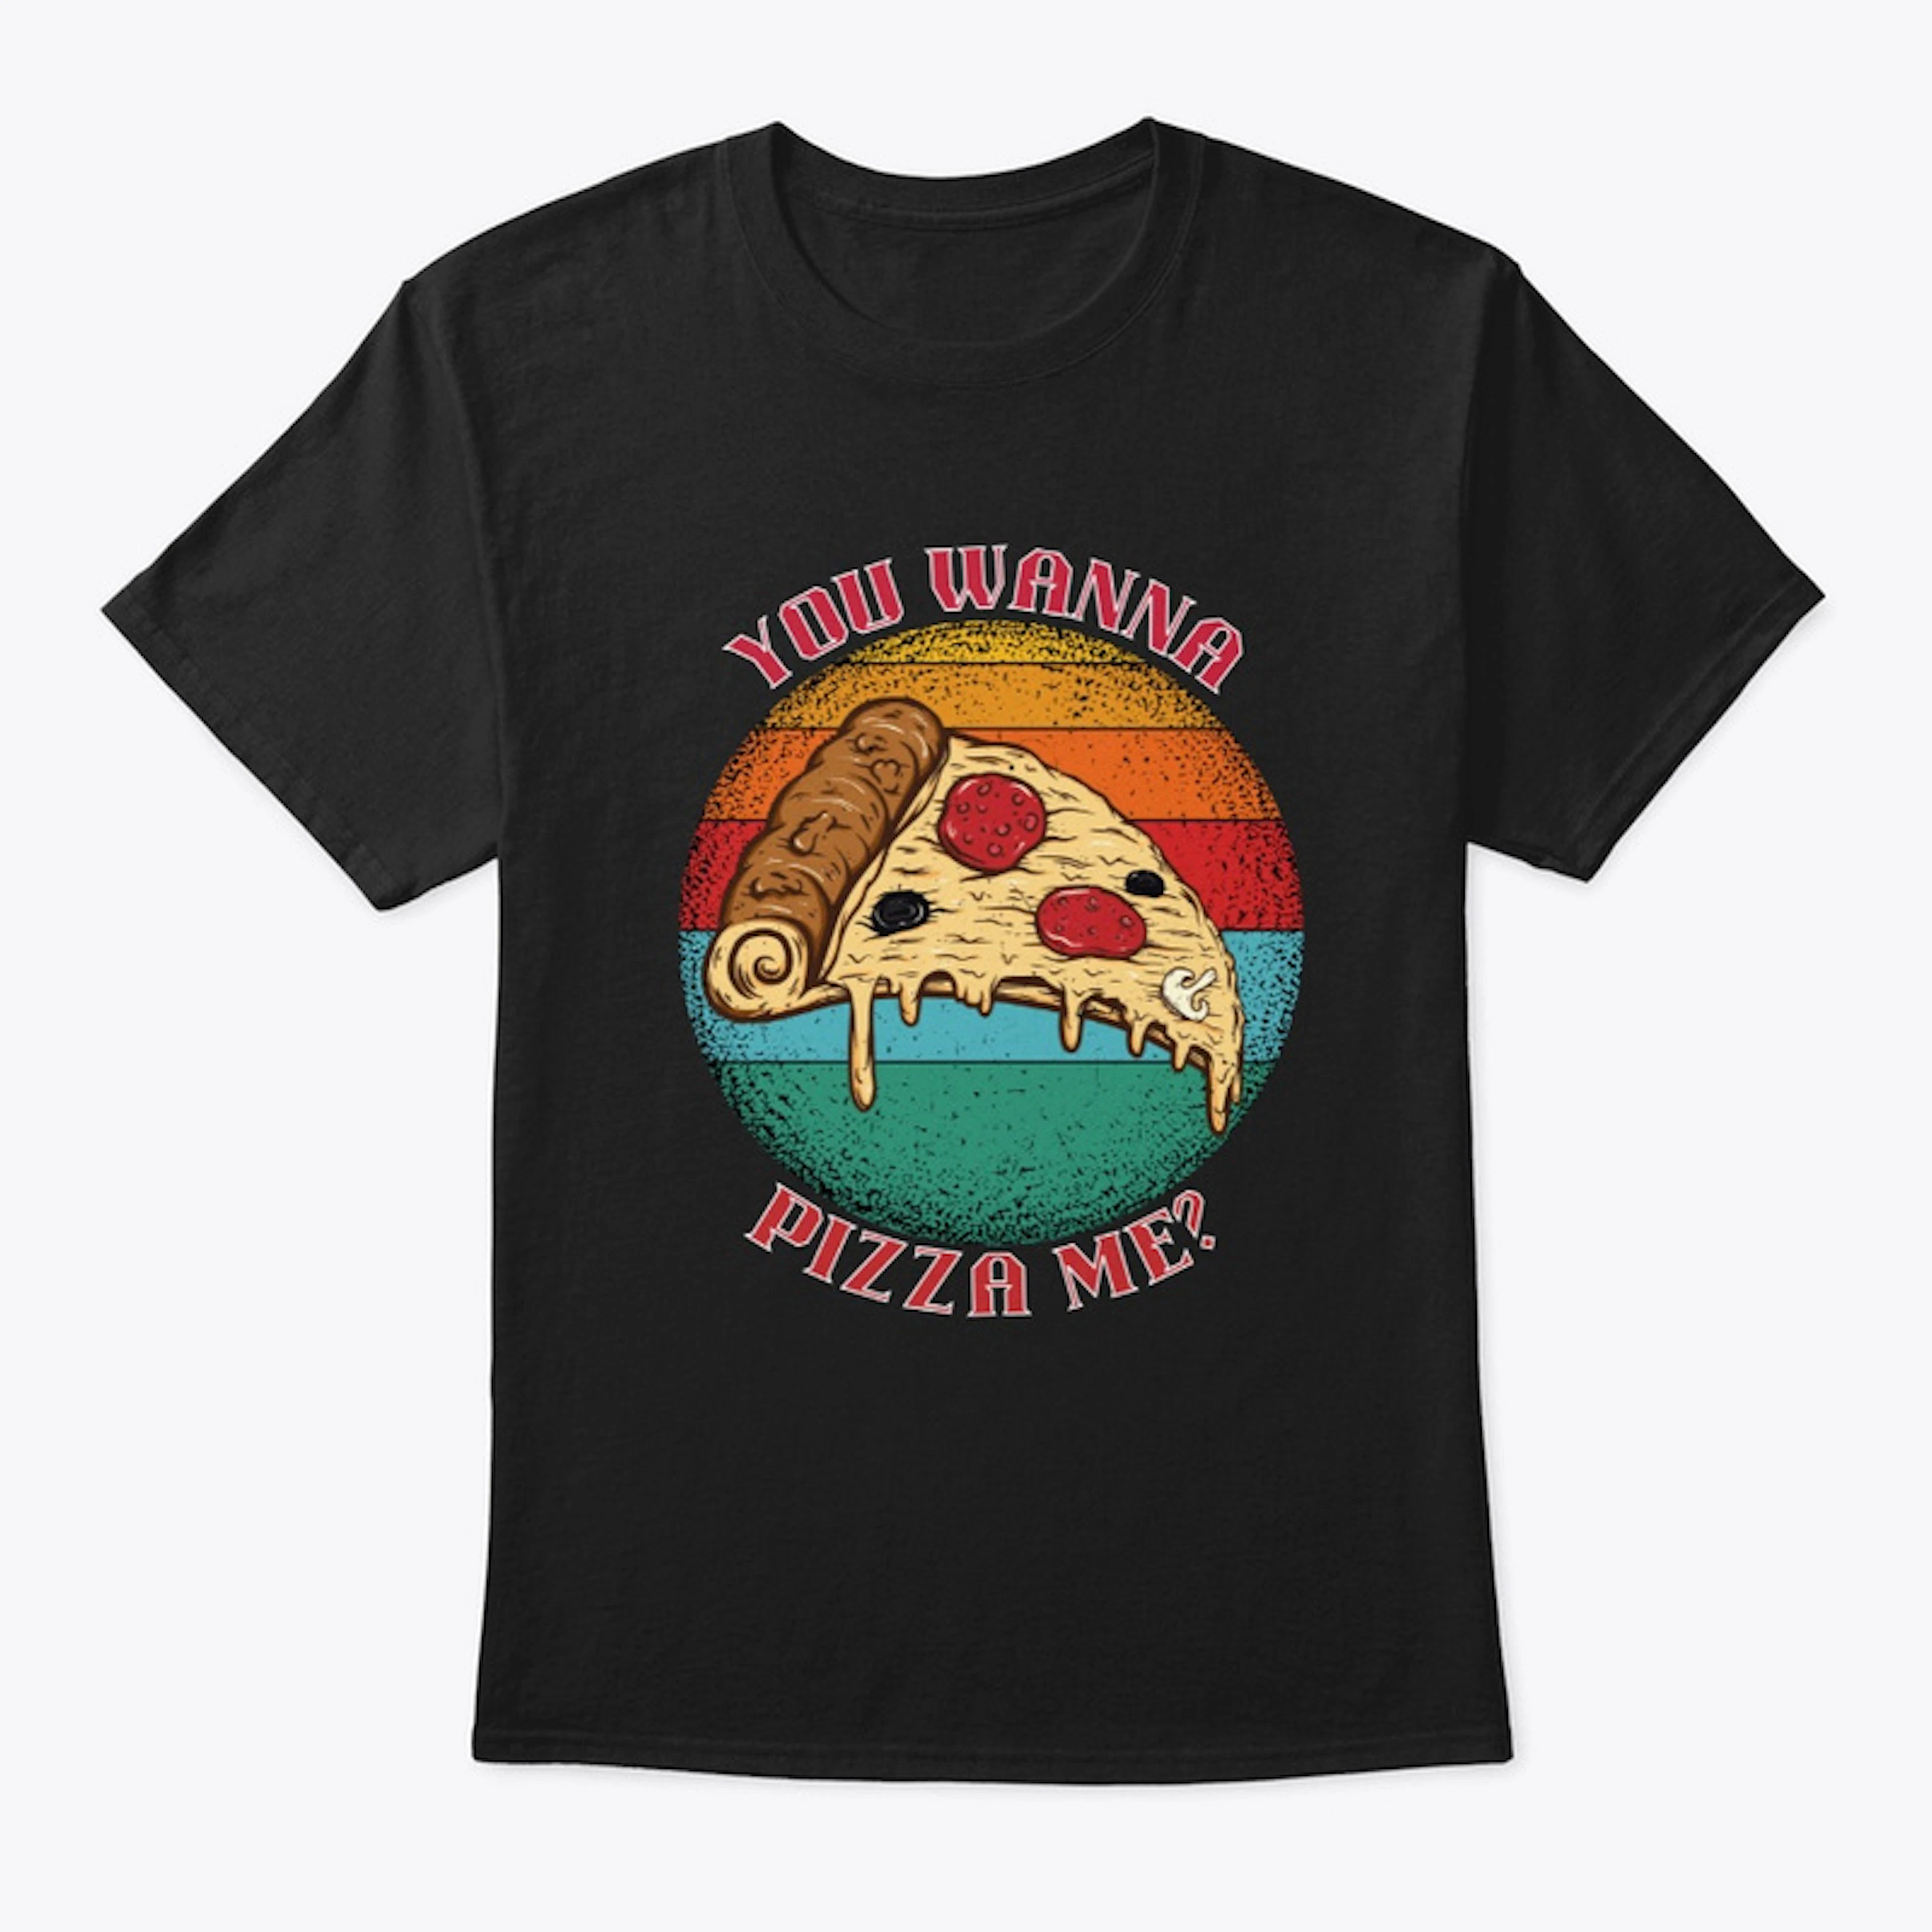 Wanna Pizza Me Retro Shirt